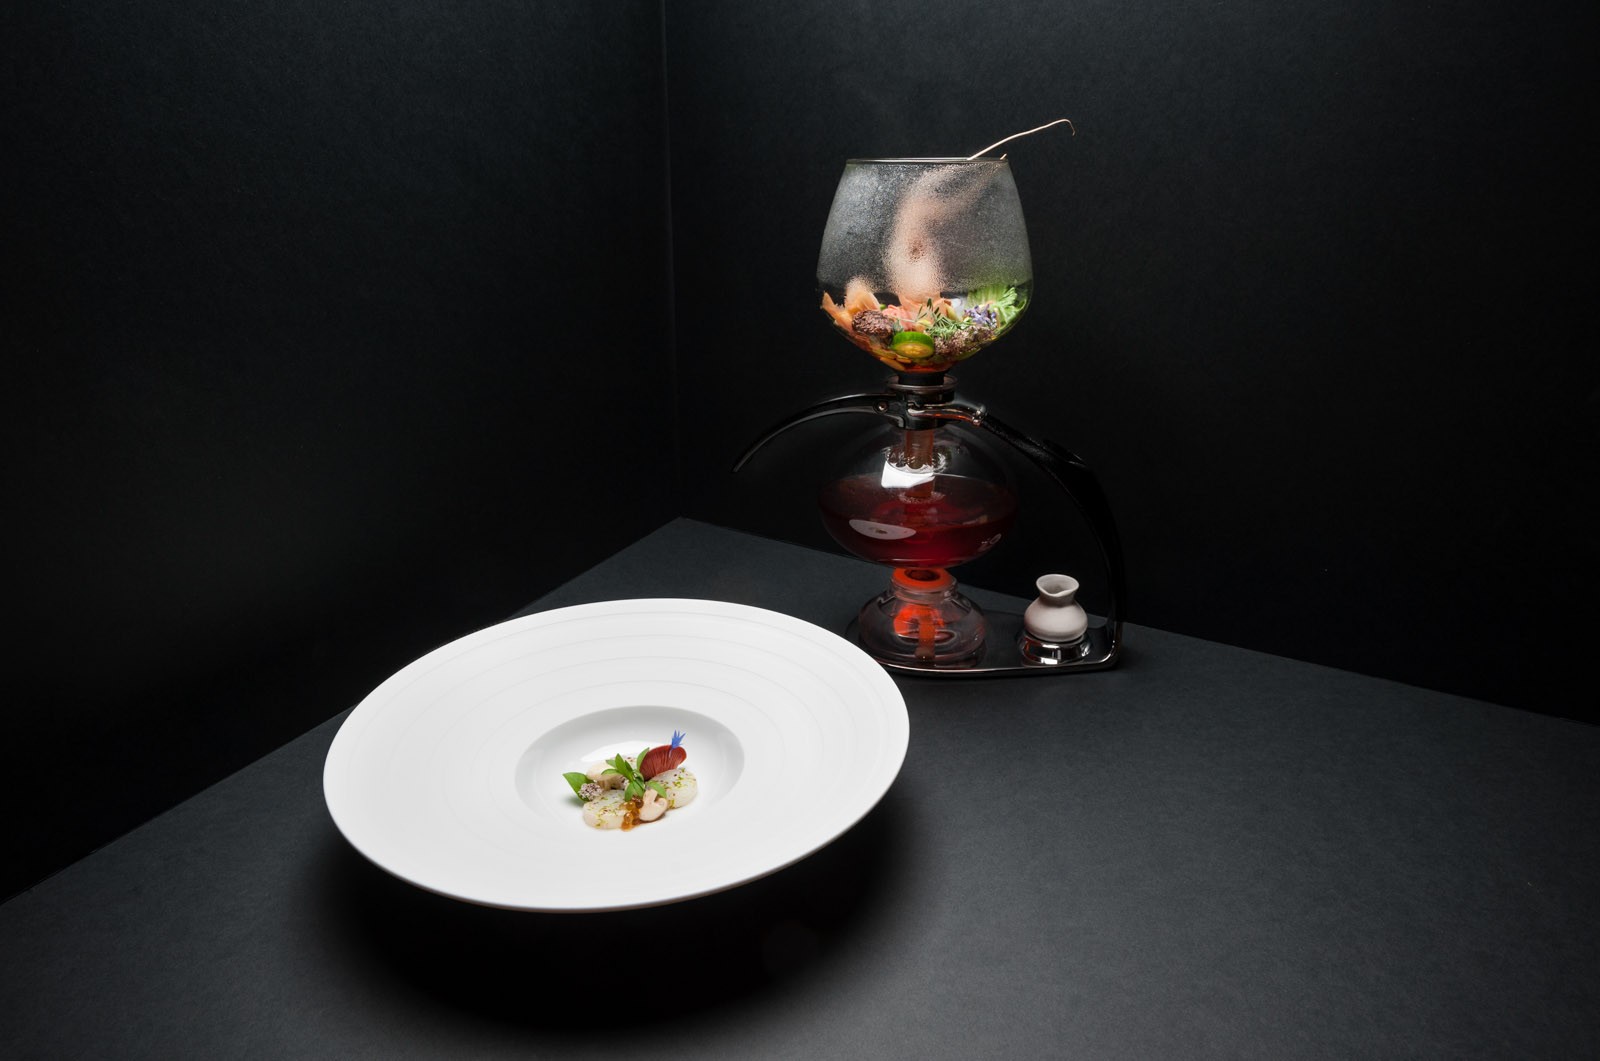 Signature Dish: Christian Jürgens "Hongkong Crayfish Tea"